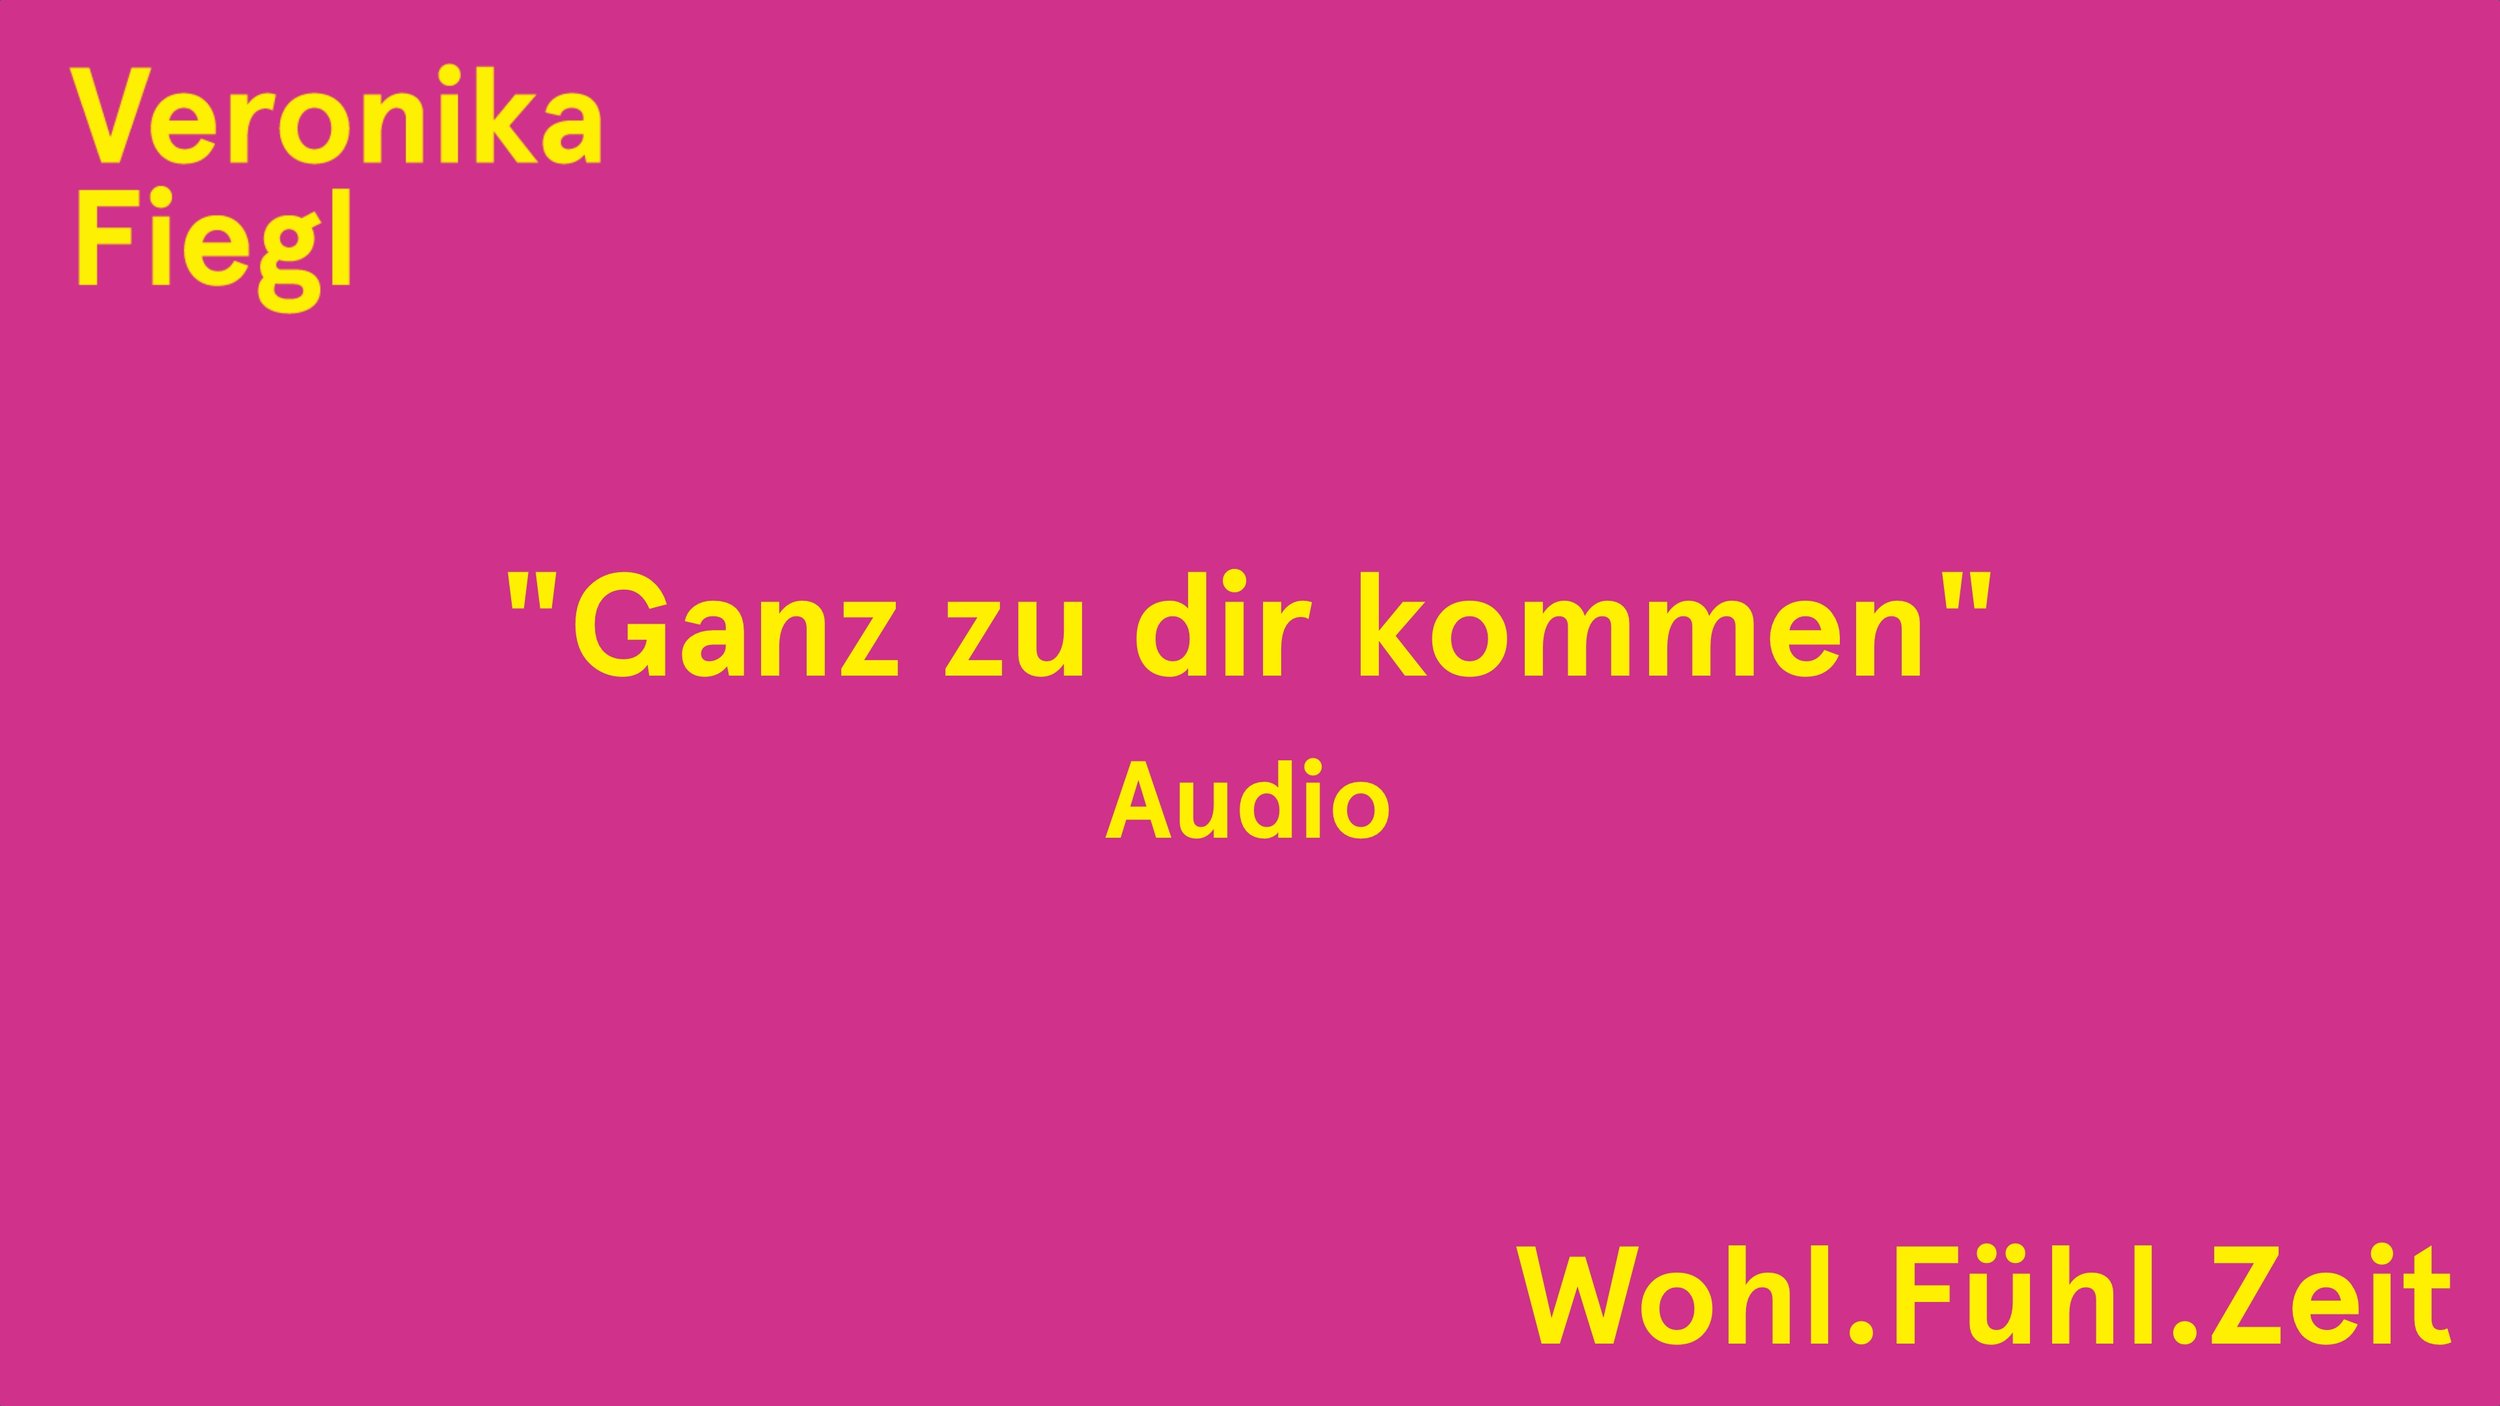 Audio Ganz zu dir kommen (2:44)